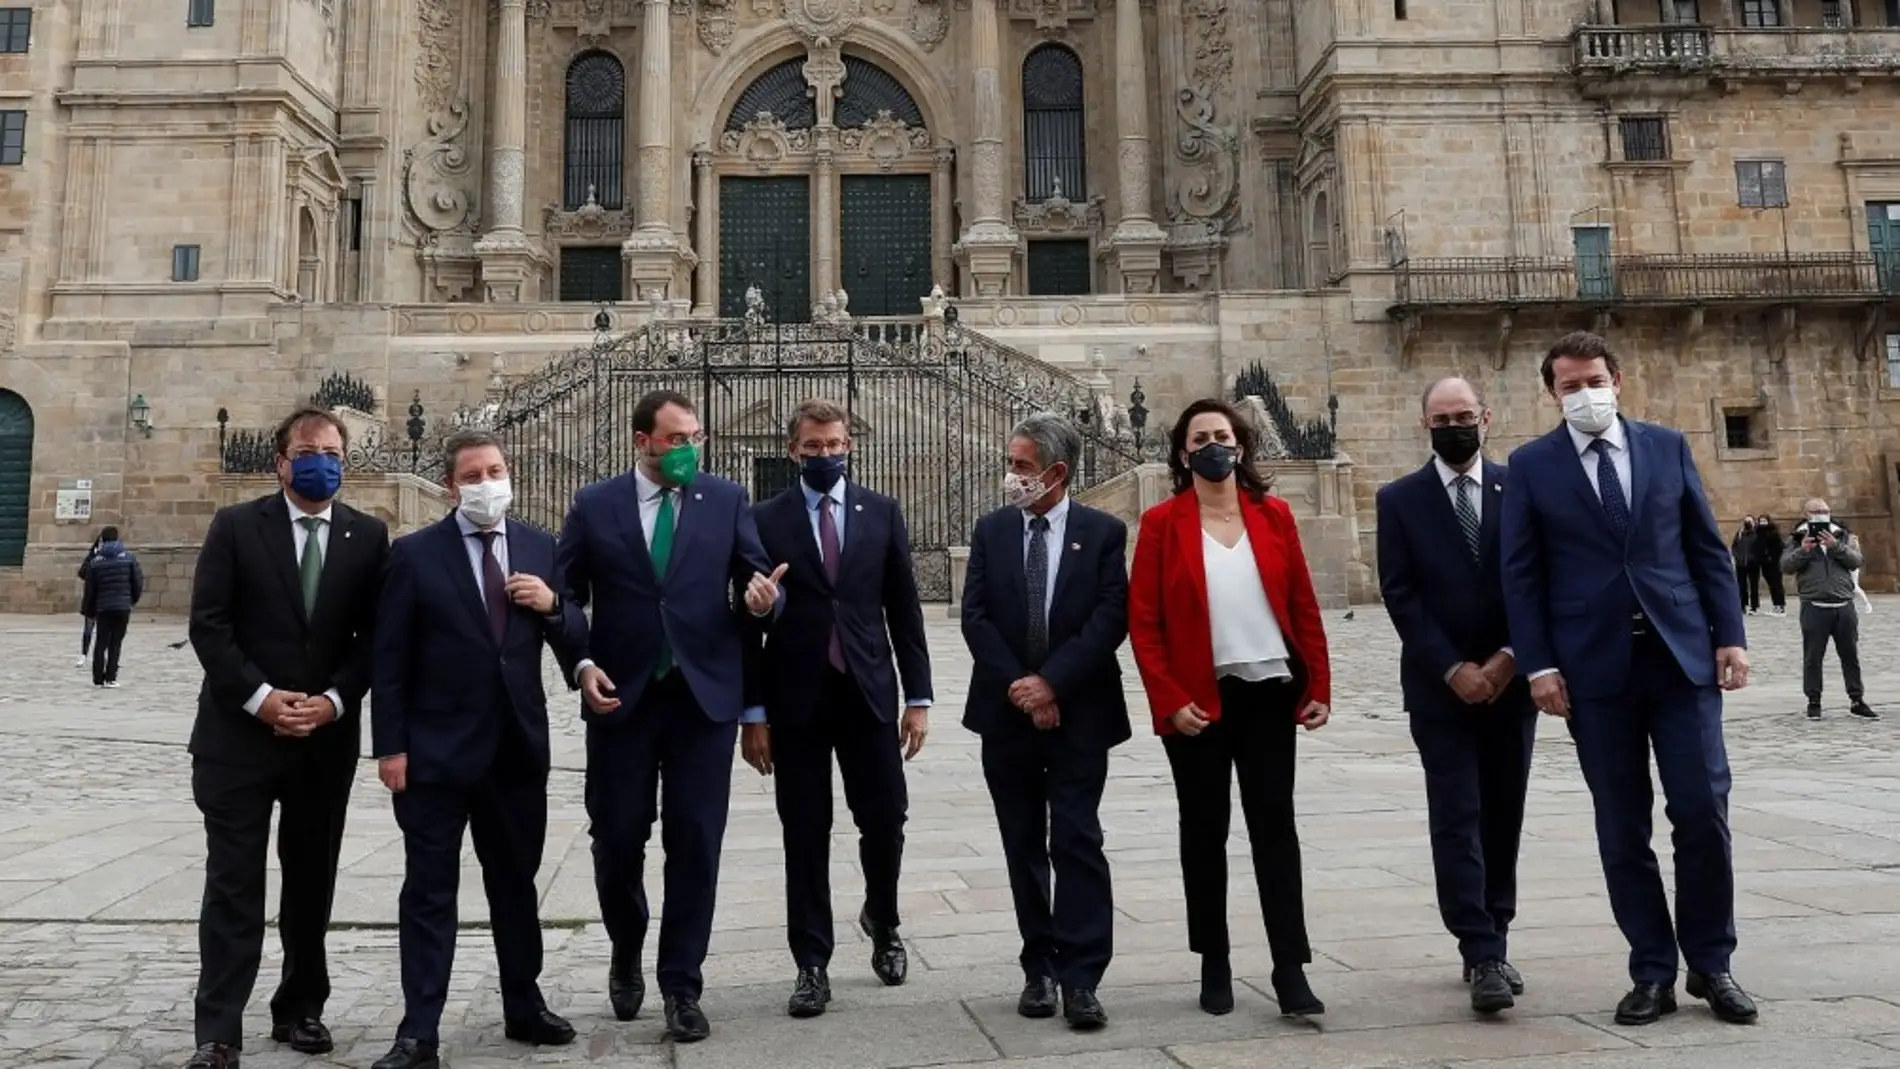 Ocho Presidentes de la España vacía 